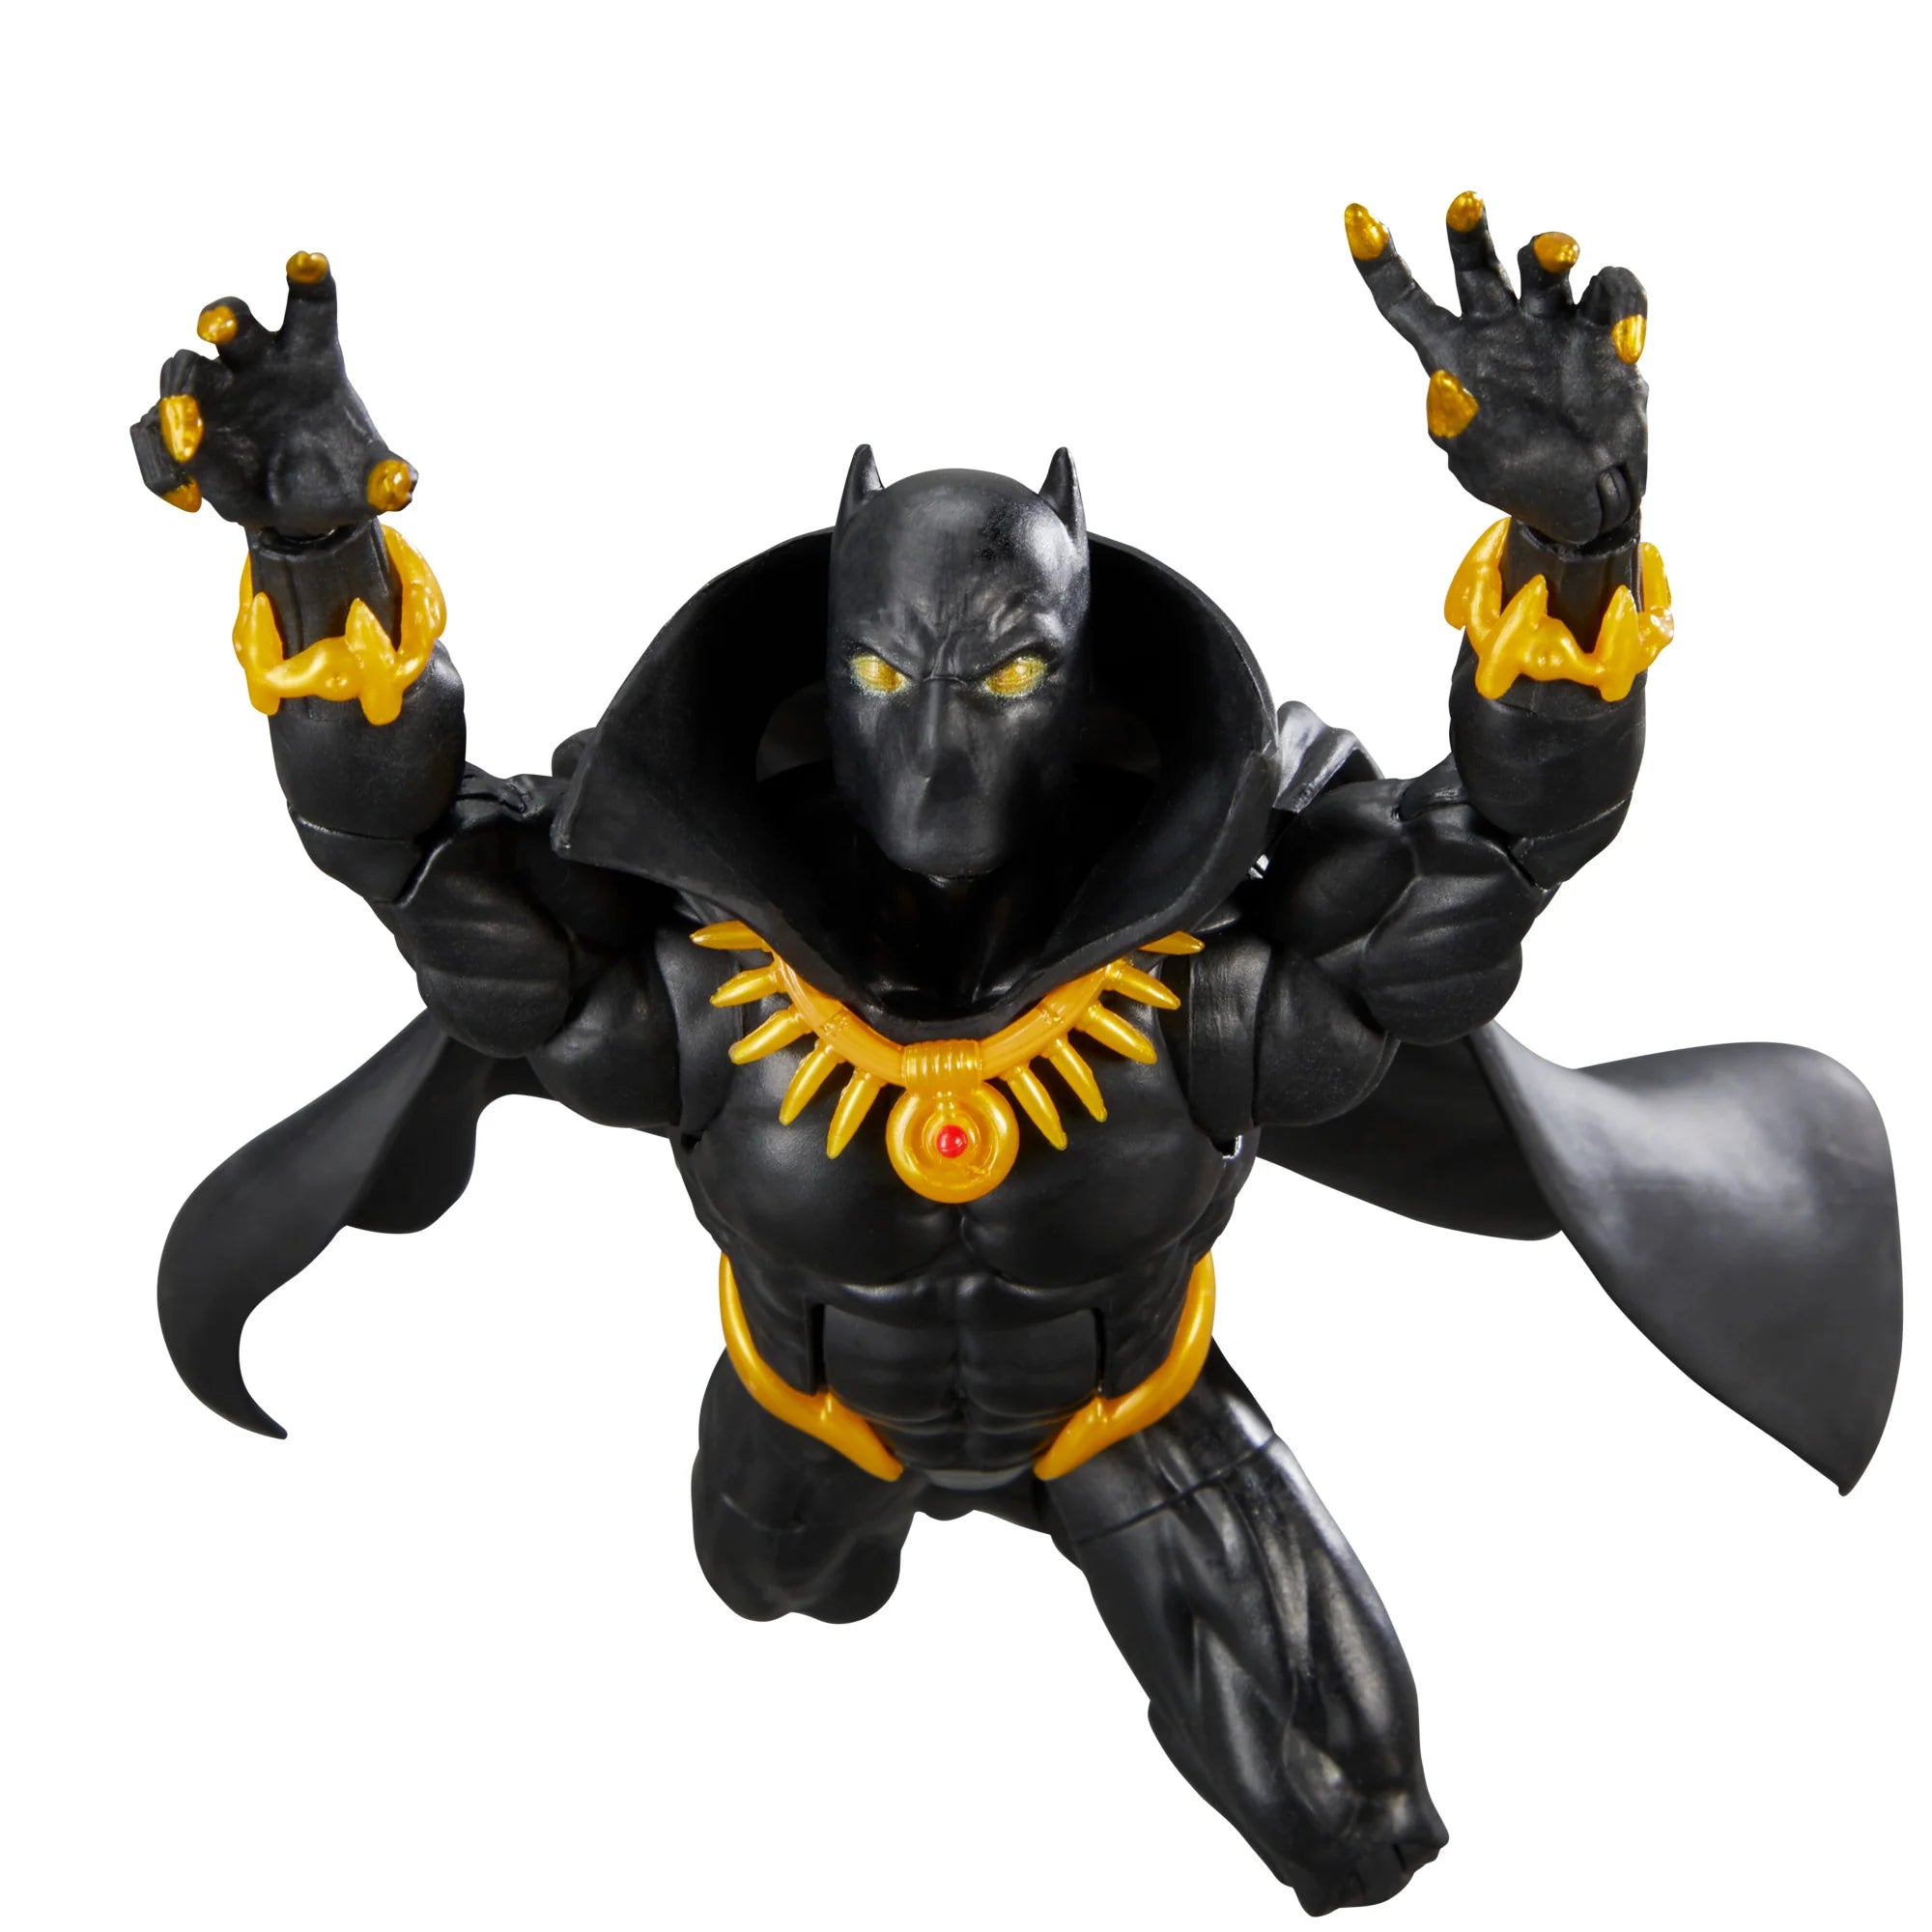 Marvel Legends Baf The Void: Marvel Comics - Black Panther